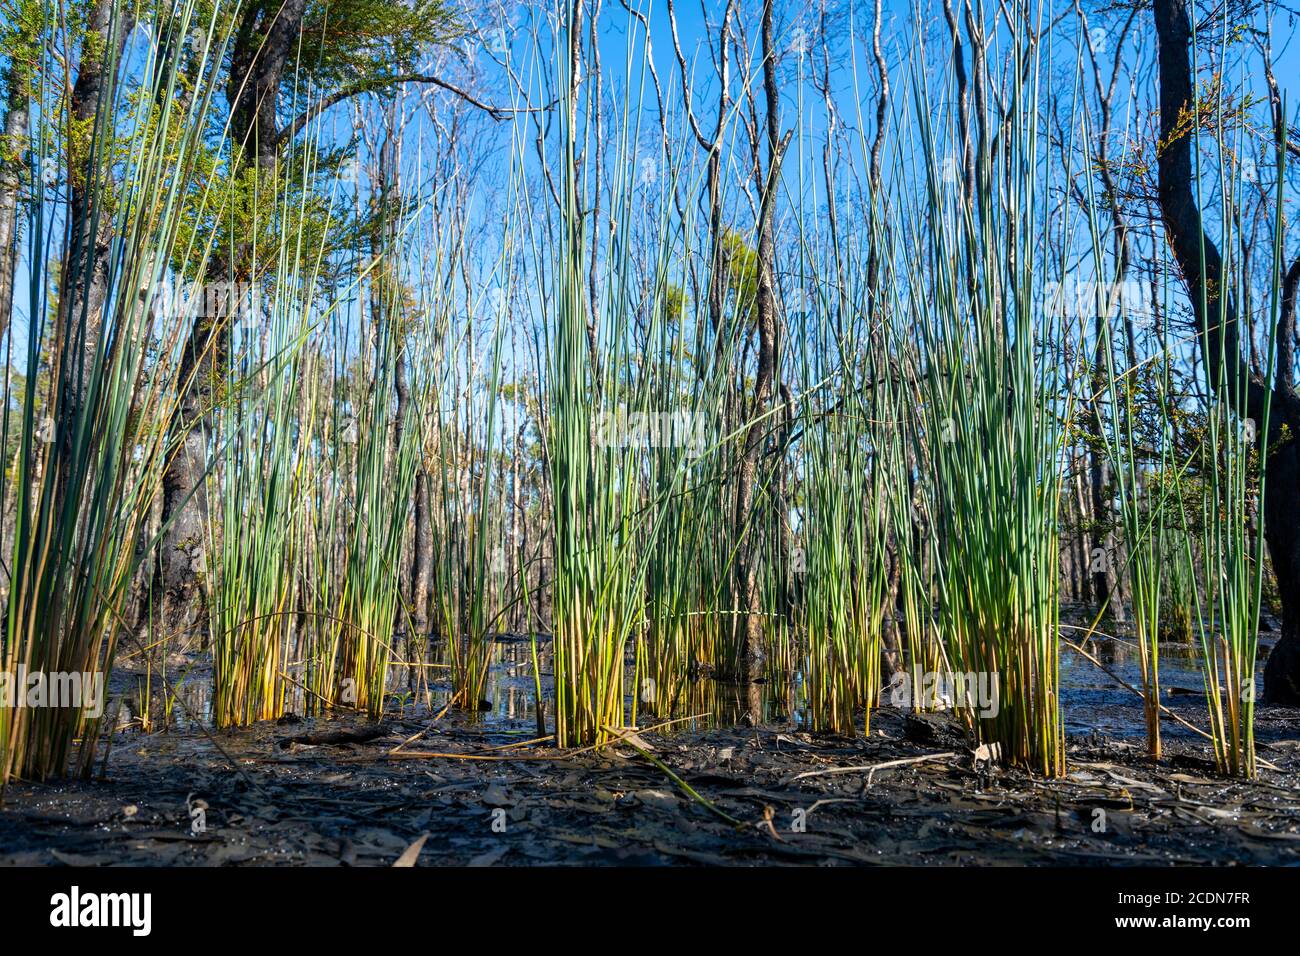 La nouvelle croissance qui apparaît après sont a été dévastée par les feux de brousse, parc national de Burrum, Queensland, Australie Banque D'Images